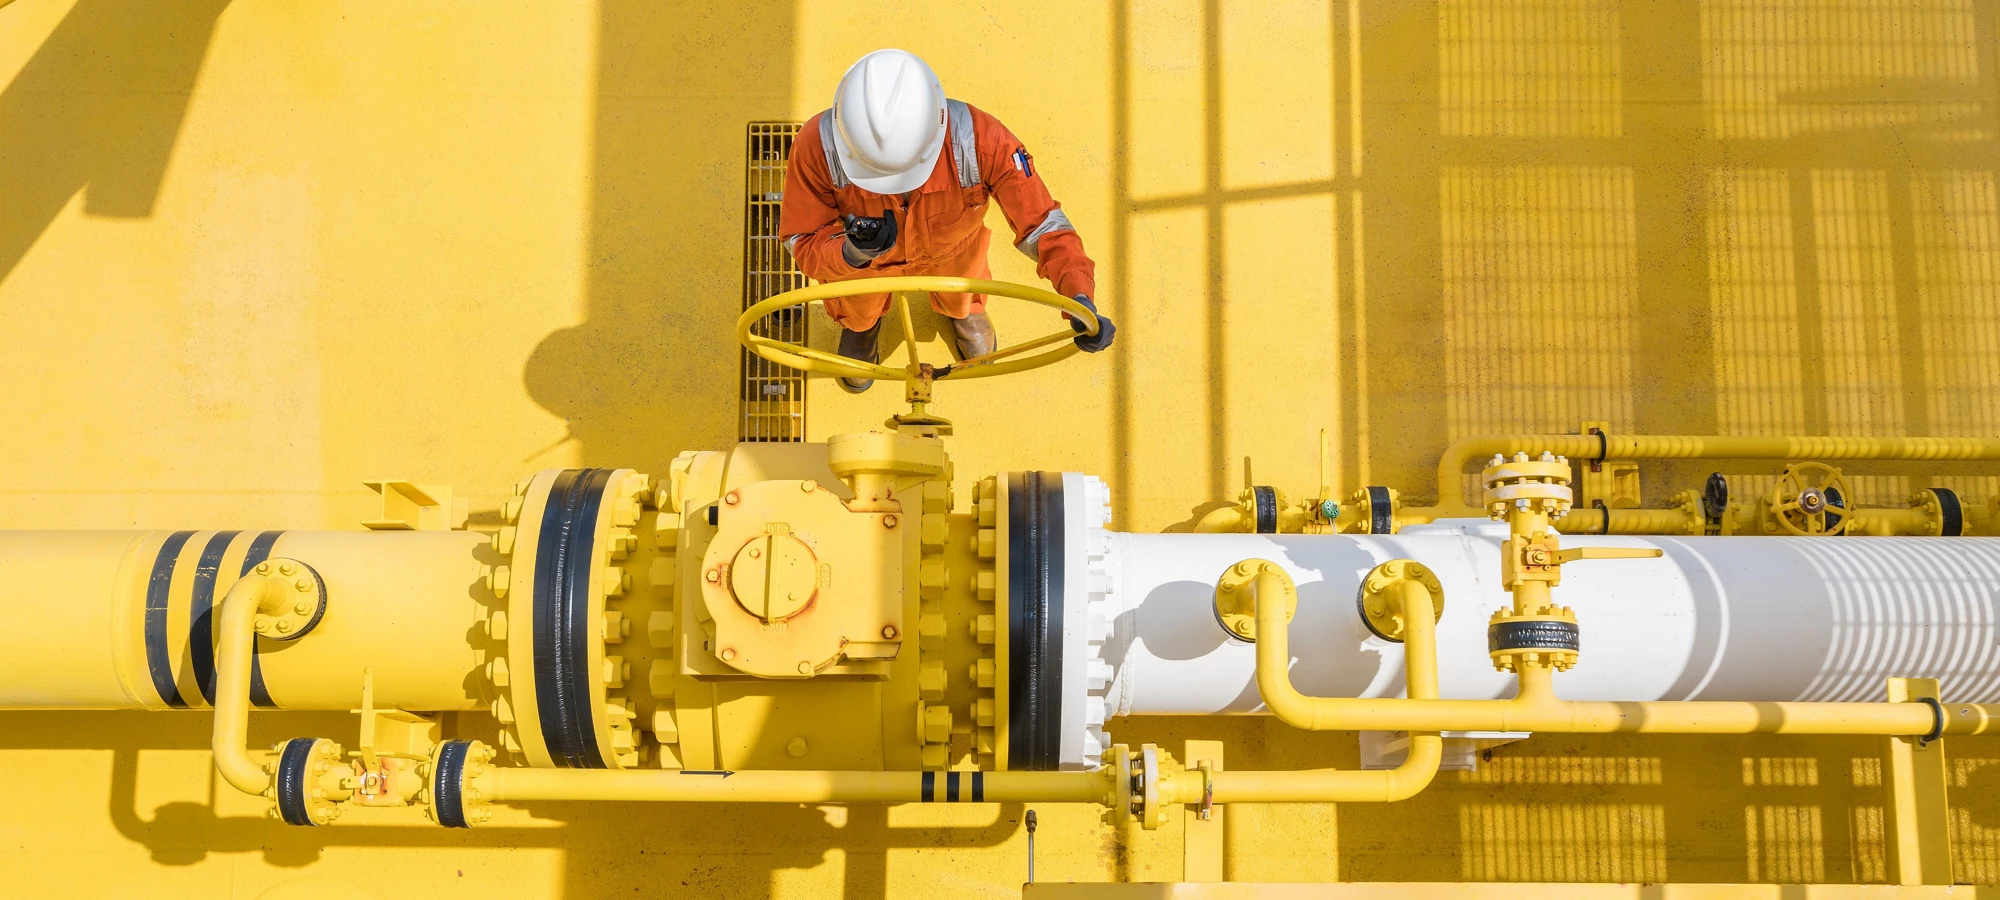 Un ingénieur dans une installation de traitement de gaz naturel. © Oil and Gas Photographer/Shutterstock